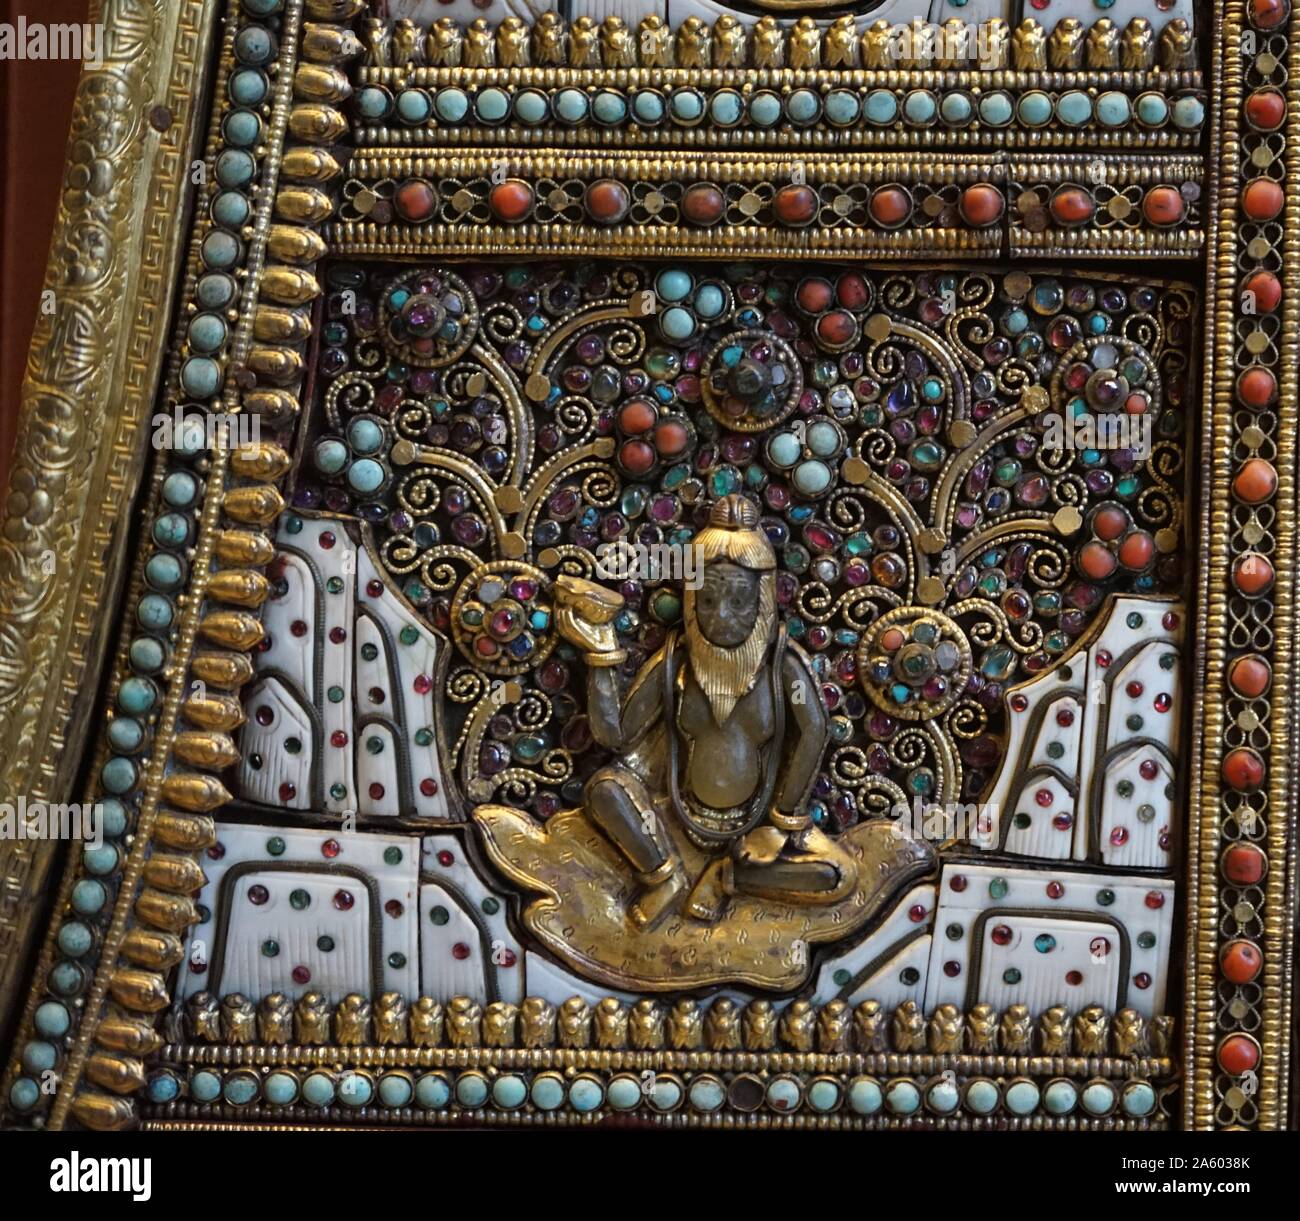 Altaraufsatz aus Metall, set mit Knochen, Shell, Edelsteinen und Halbedelsteinen. Aus Nepal. Vom 18. Jahrhundert Stockfoto